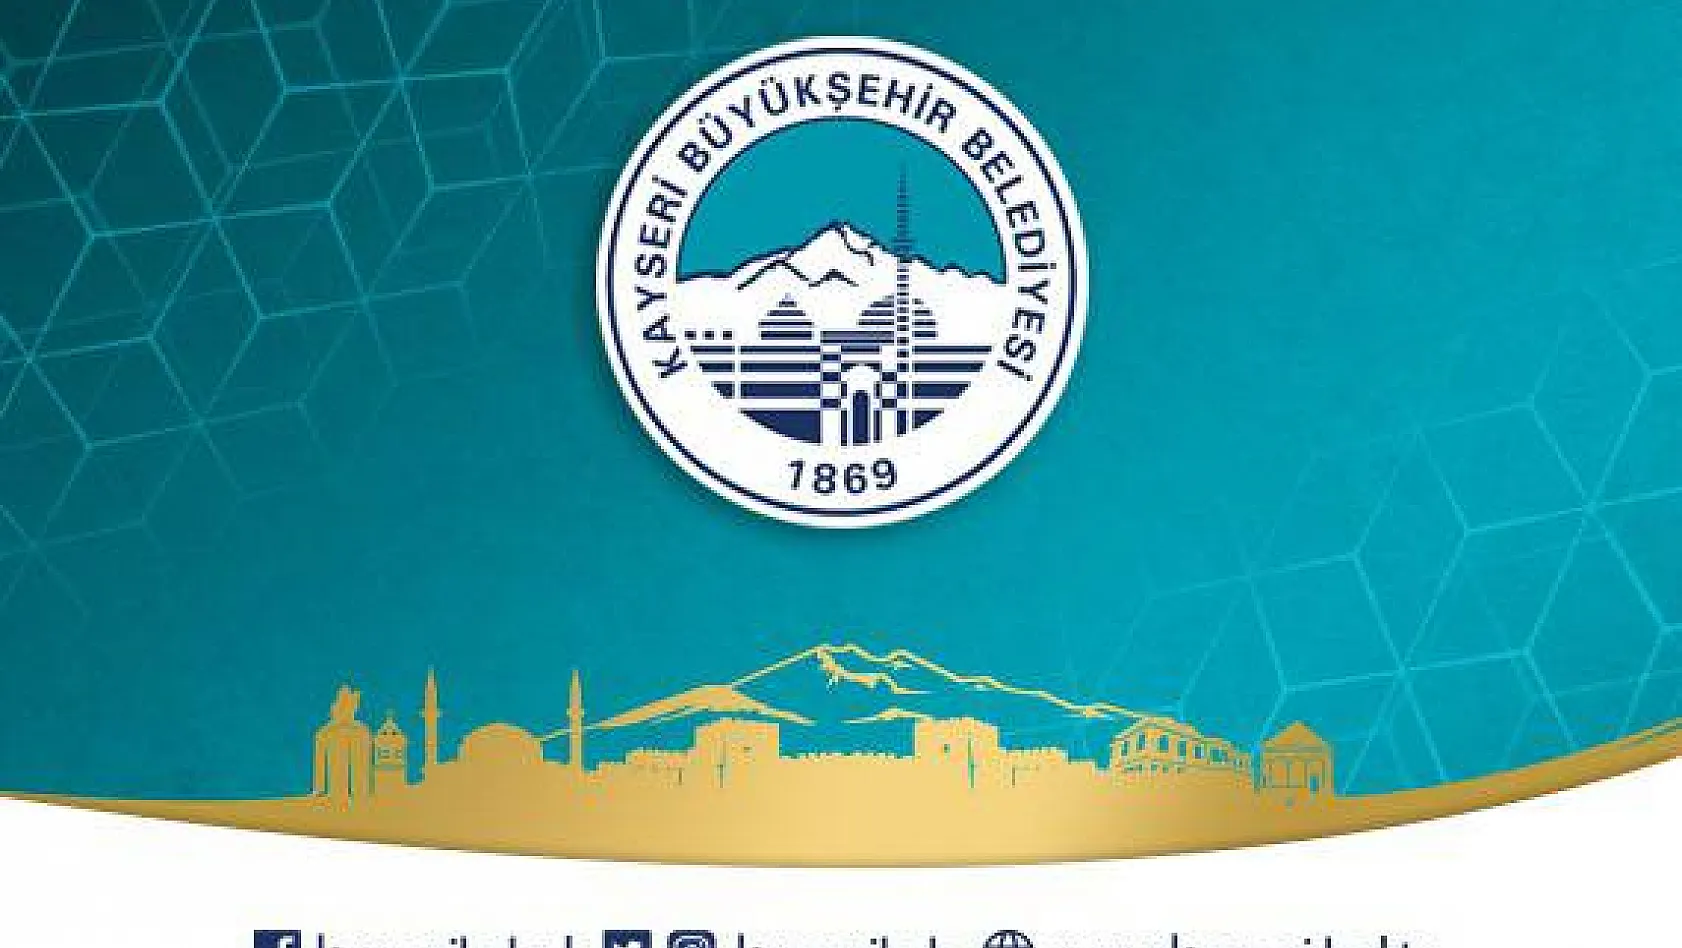 Kayseri Büyükşehir Belediyesi Şeffaflık ve Hesap Verebilirliğe imkan veren bir anlayışla yönetilmektedir